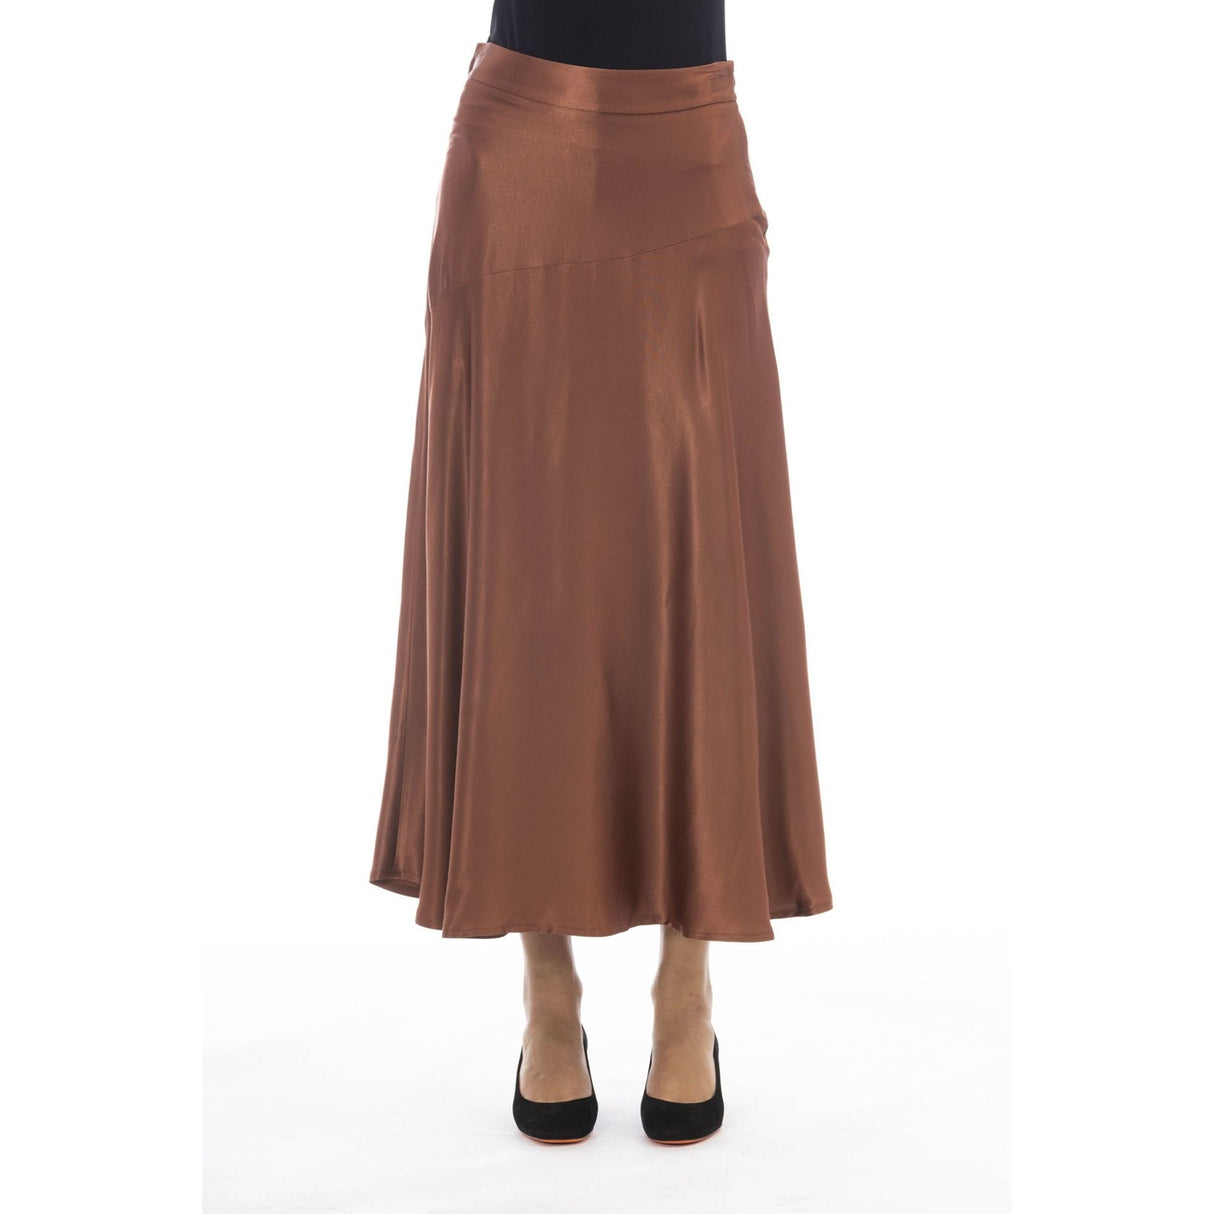 Women's skirt Viscose skirt Fall/Winter skirt Italian-made skirt Soft skirt Comfortable skirt Breathable skirt (if applicable) Flattering skirt Stylish skirt Side zip skirt